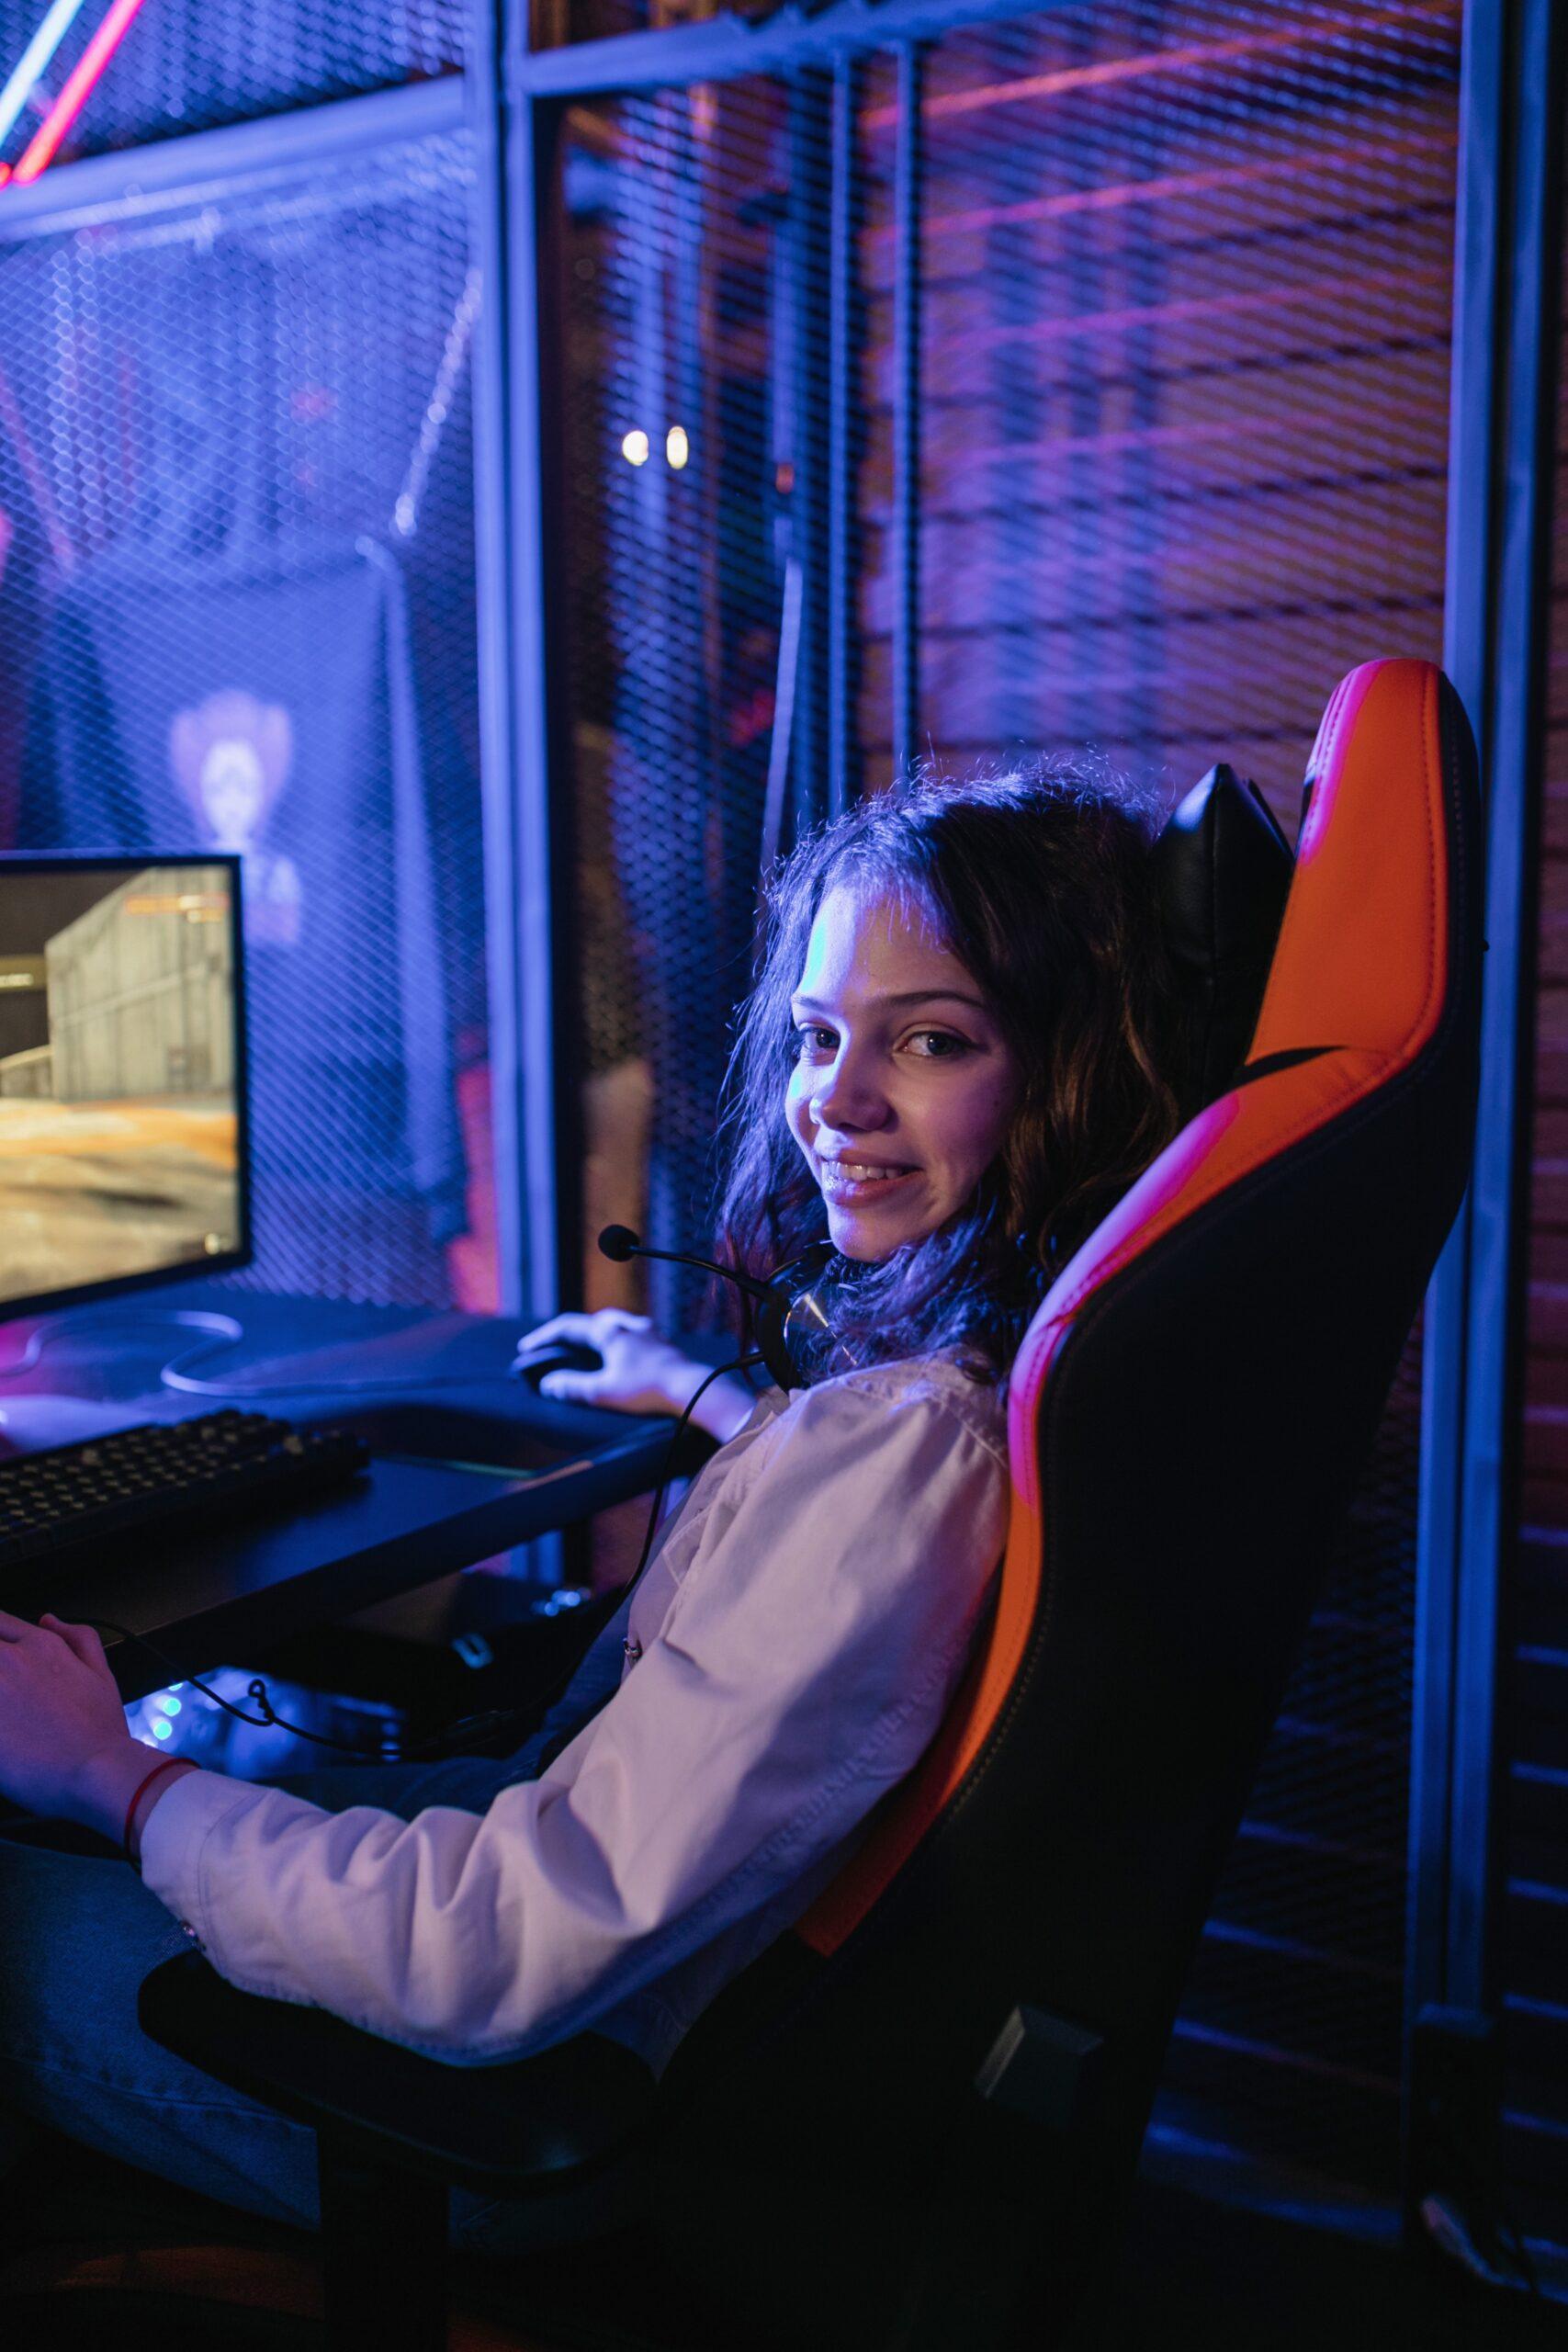 Gamer girl playing video game on laptop